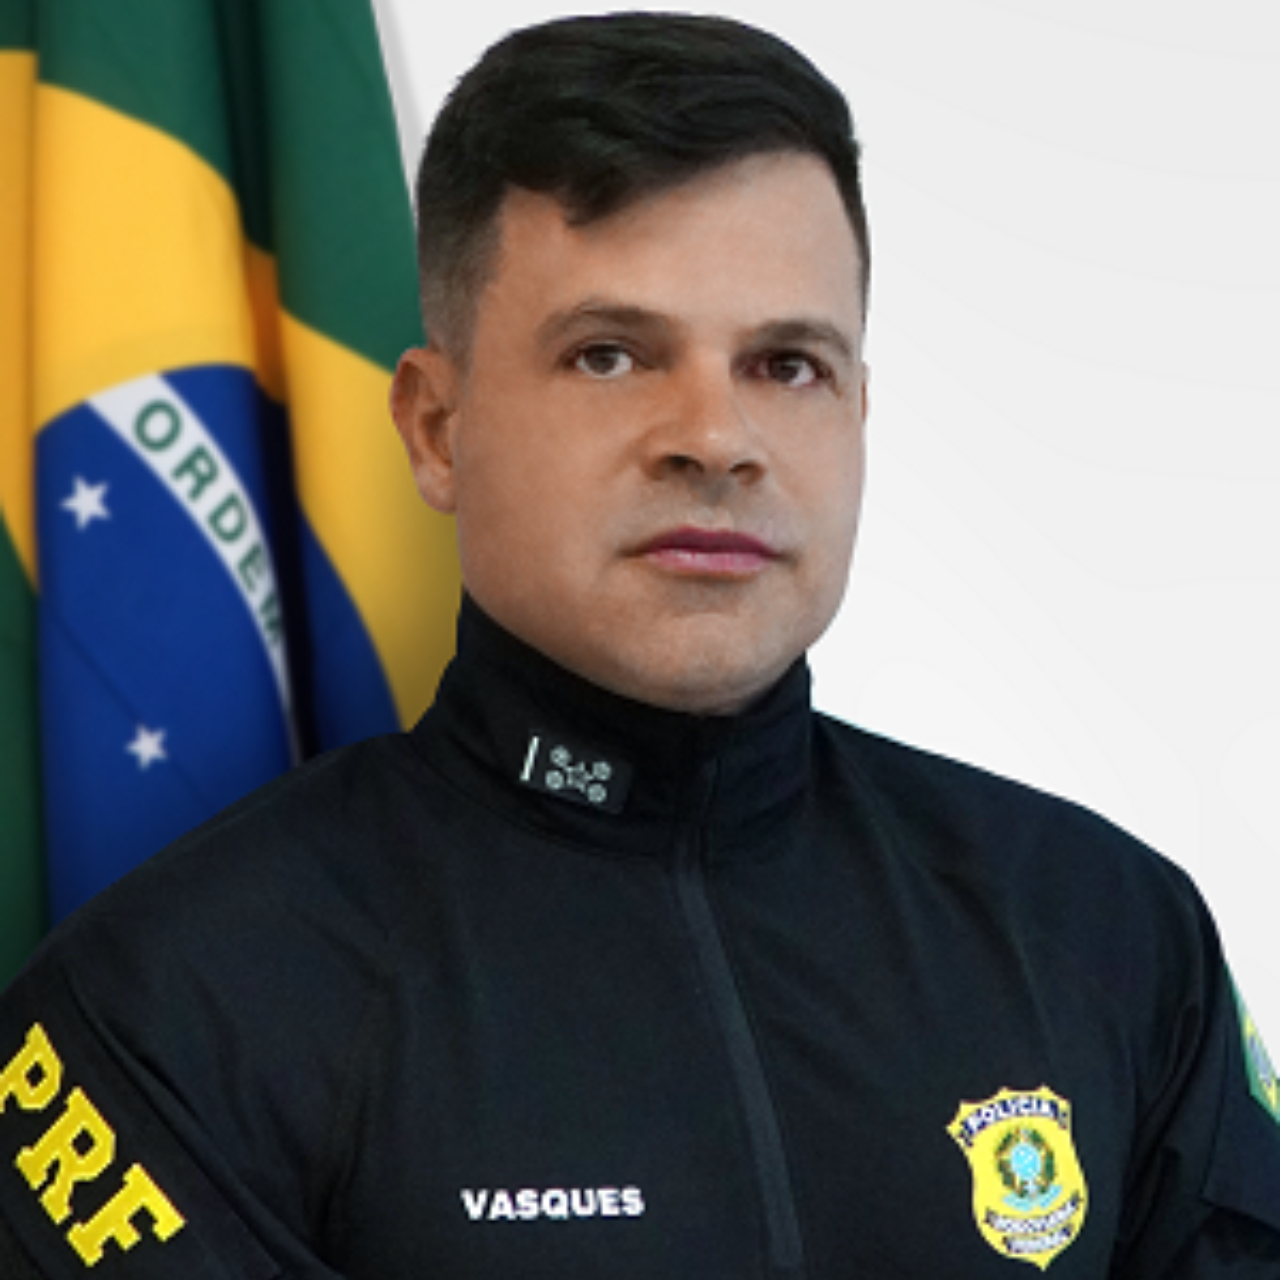 Silvinei Vasques, diretor-geral da Polícia Rodoviária Federal, se posicionou recentemente a favor da candidatura de Jair Bolsonaro